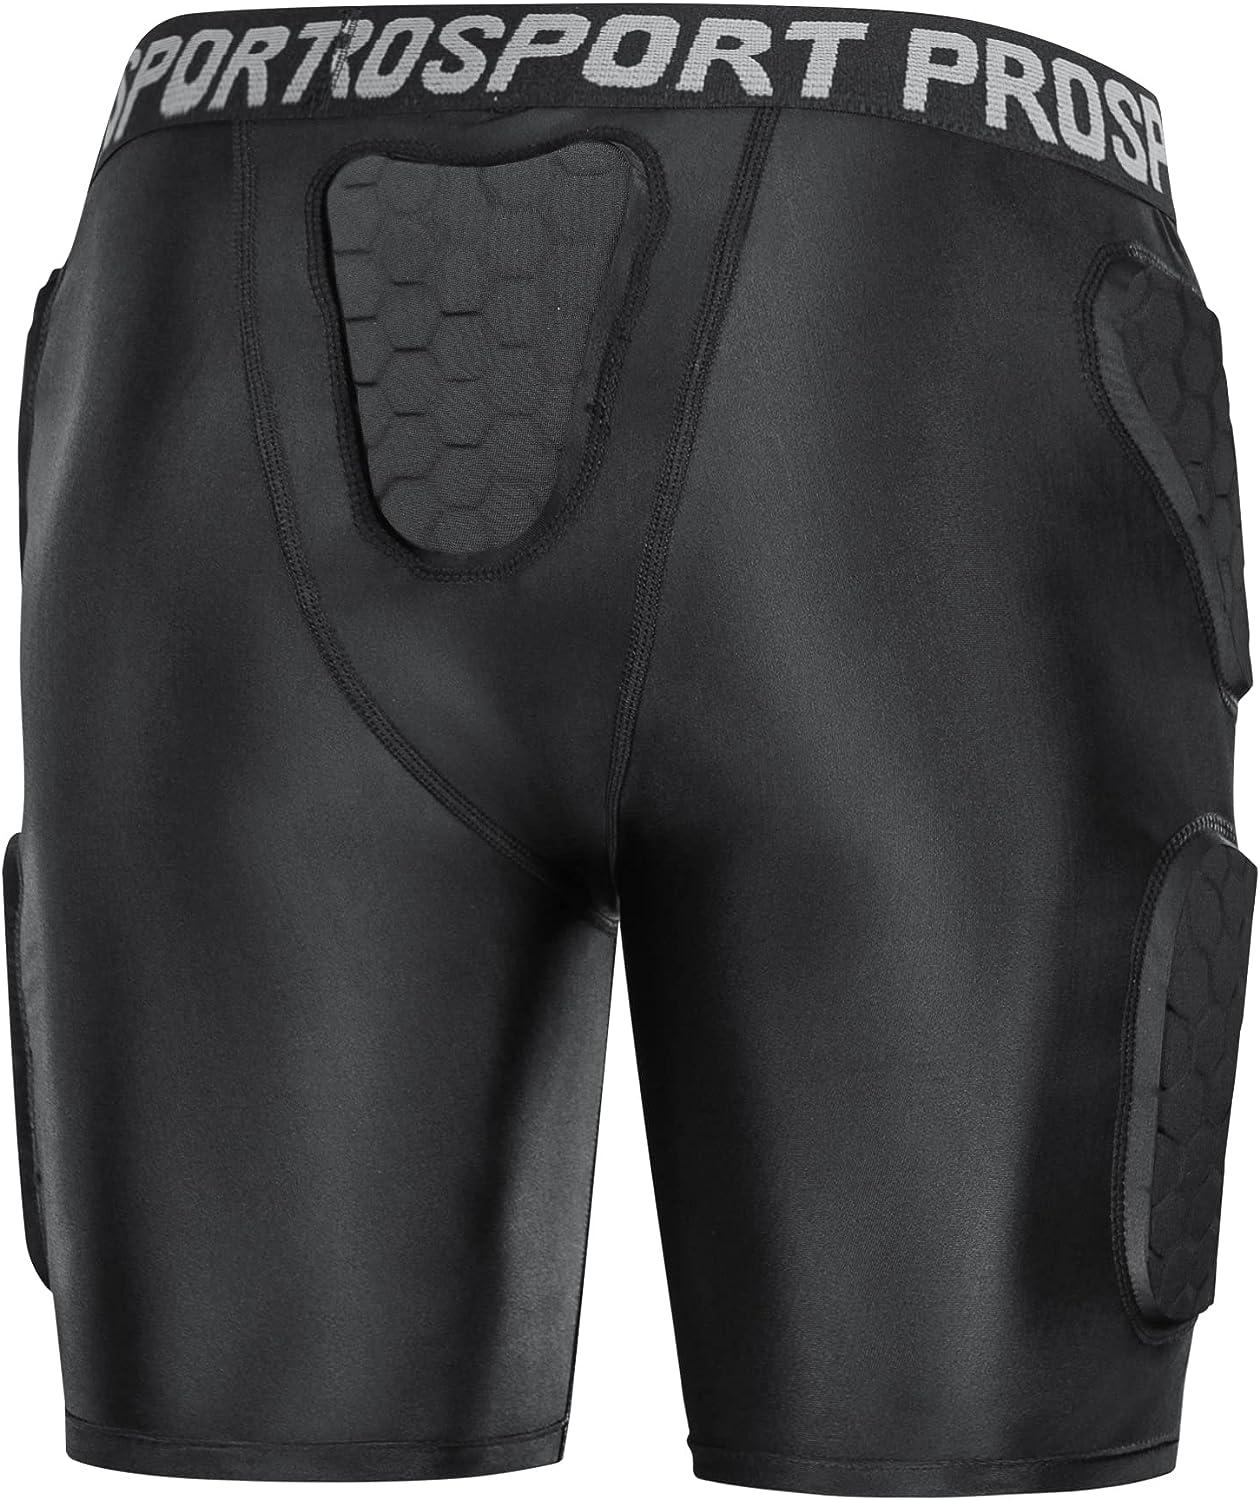 Nike Pro Combat Padded Compression Shorts Size L  Padded compression shorts,  Nike pro combat, Compression shorts